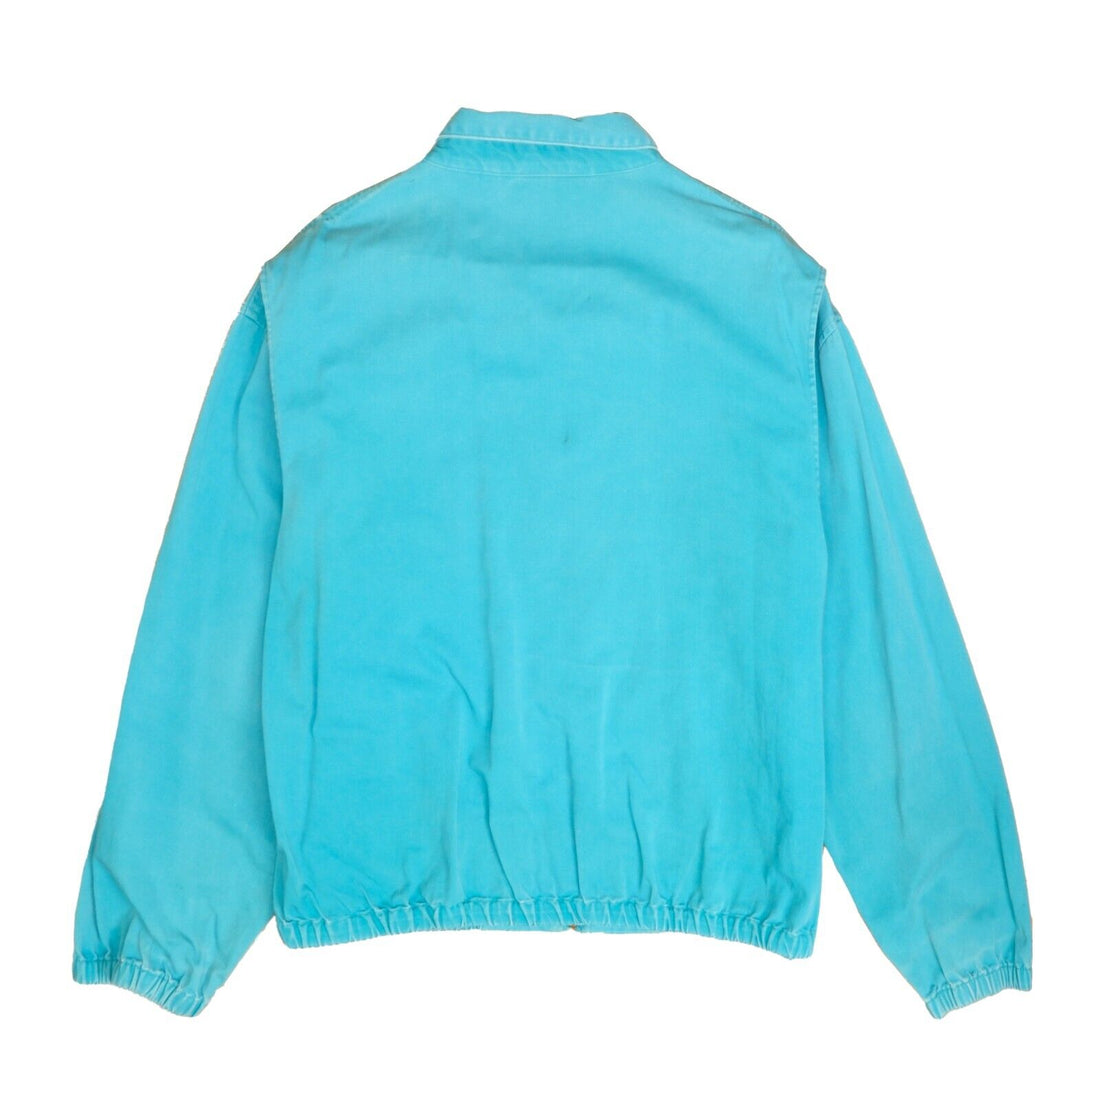 Vintage Polo Ralph Lauren Harrington Jacket Size XL Teal